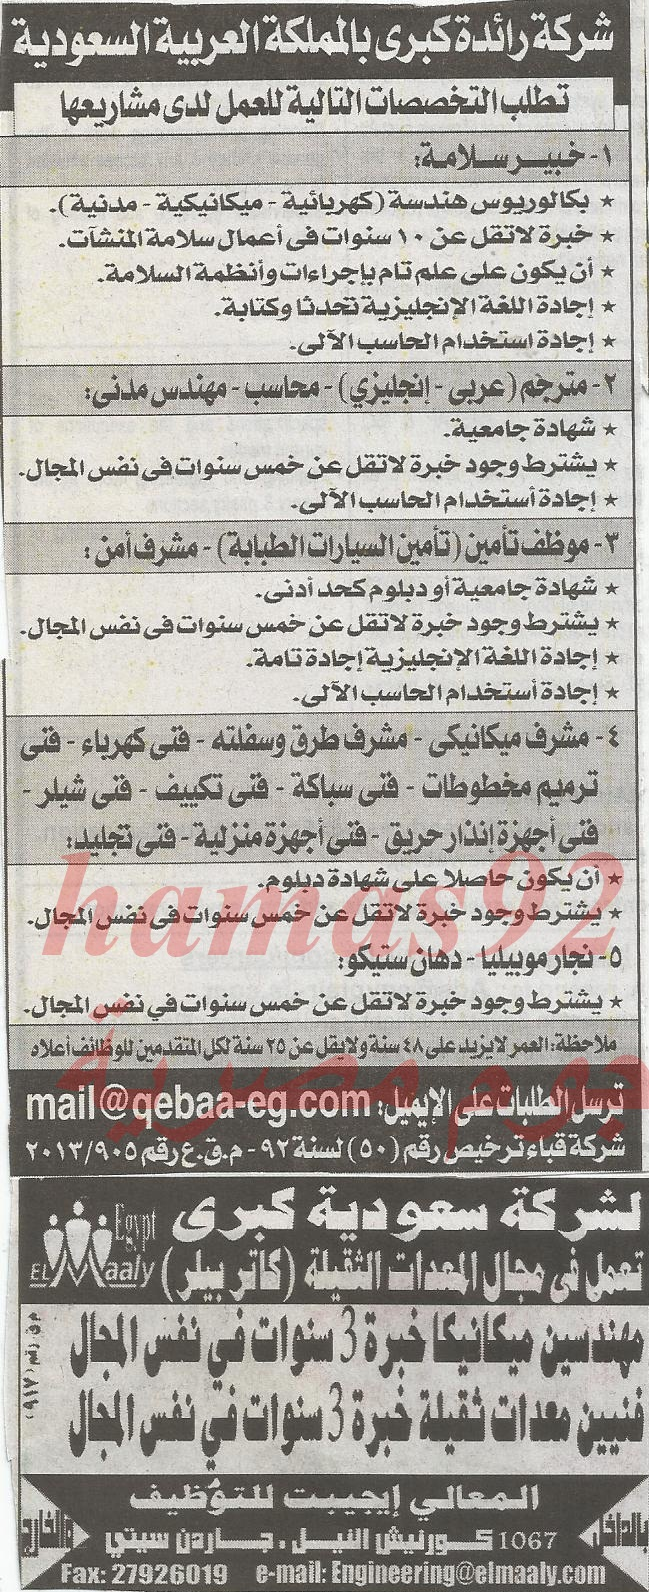 وظائف السعودية بجريدة الاهرام الجمعة 20-12-2013 21